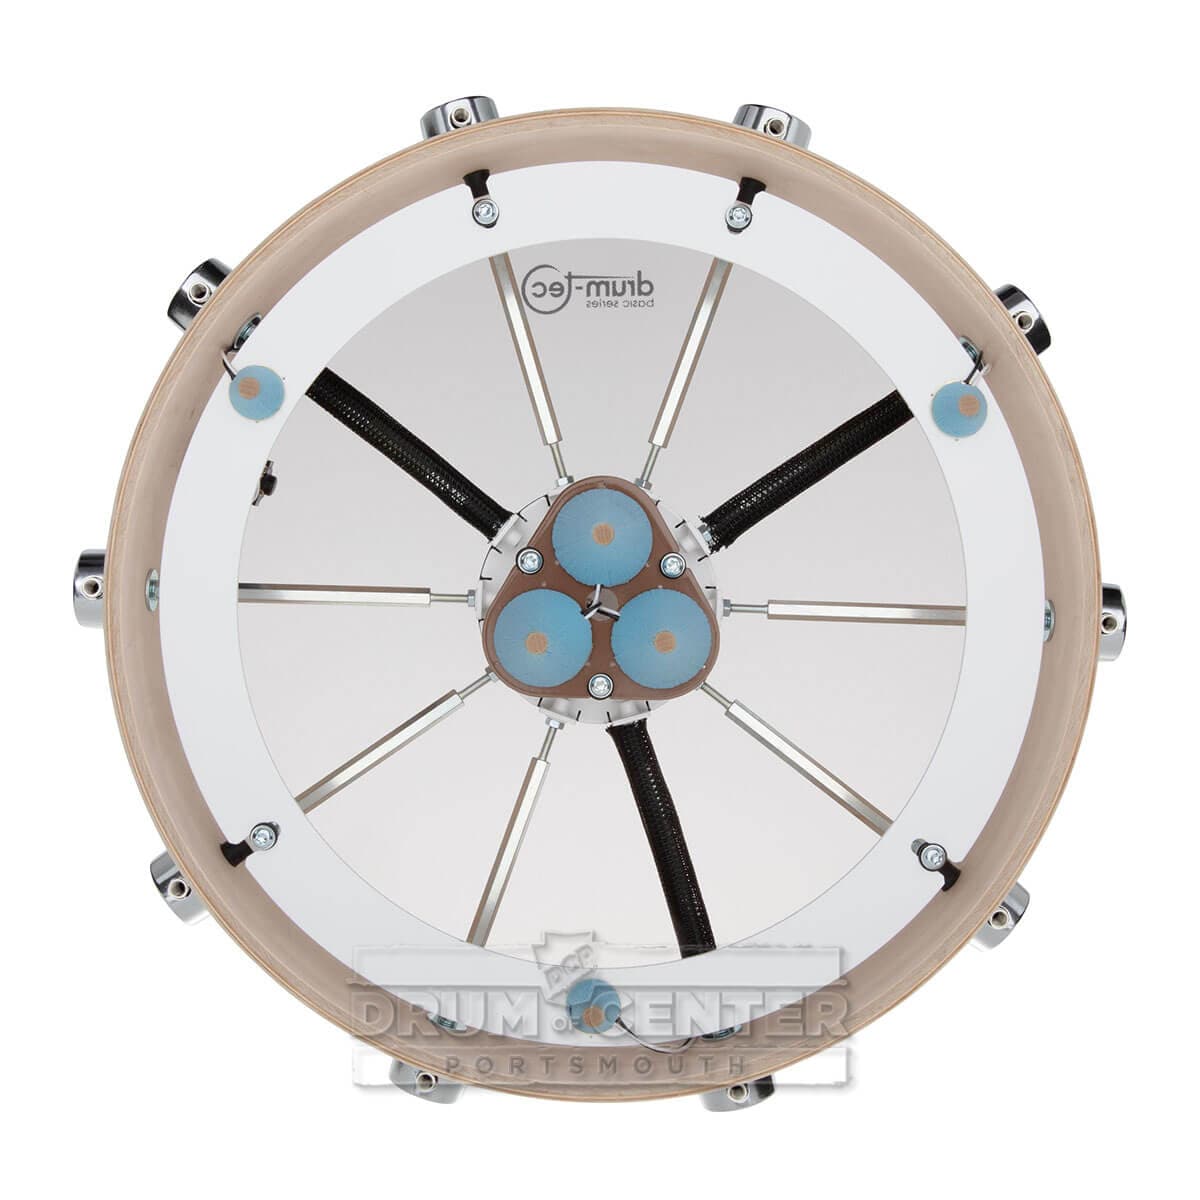 Drum-Tec Pro 3 Series E-Snare Drum 14x7 Blue Burst